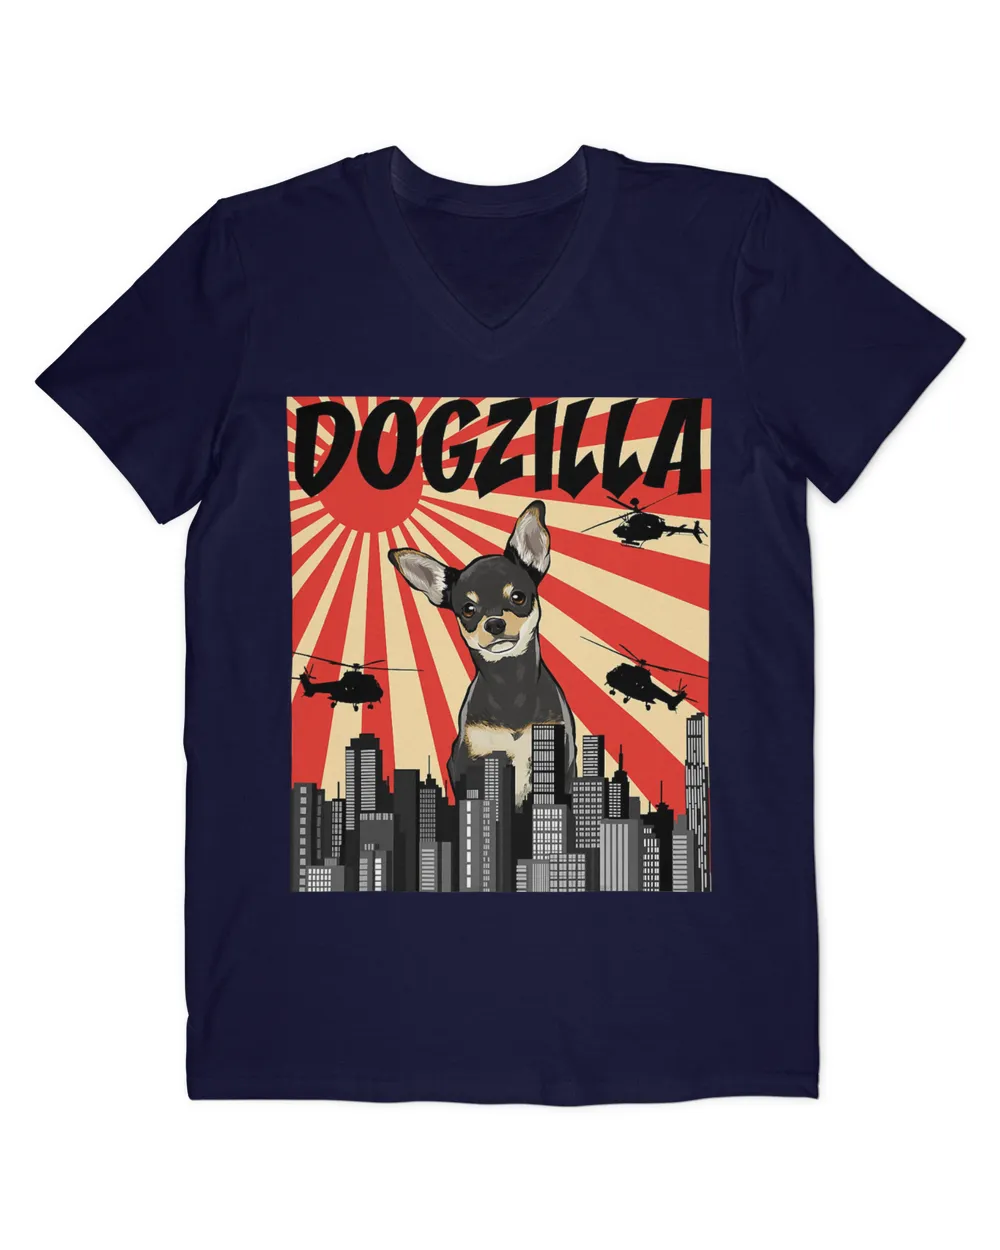 Funny Retro Japanese Dogzilla Black Chihuahua T-Shirt